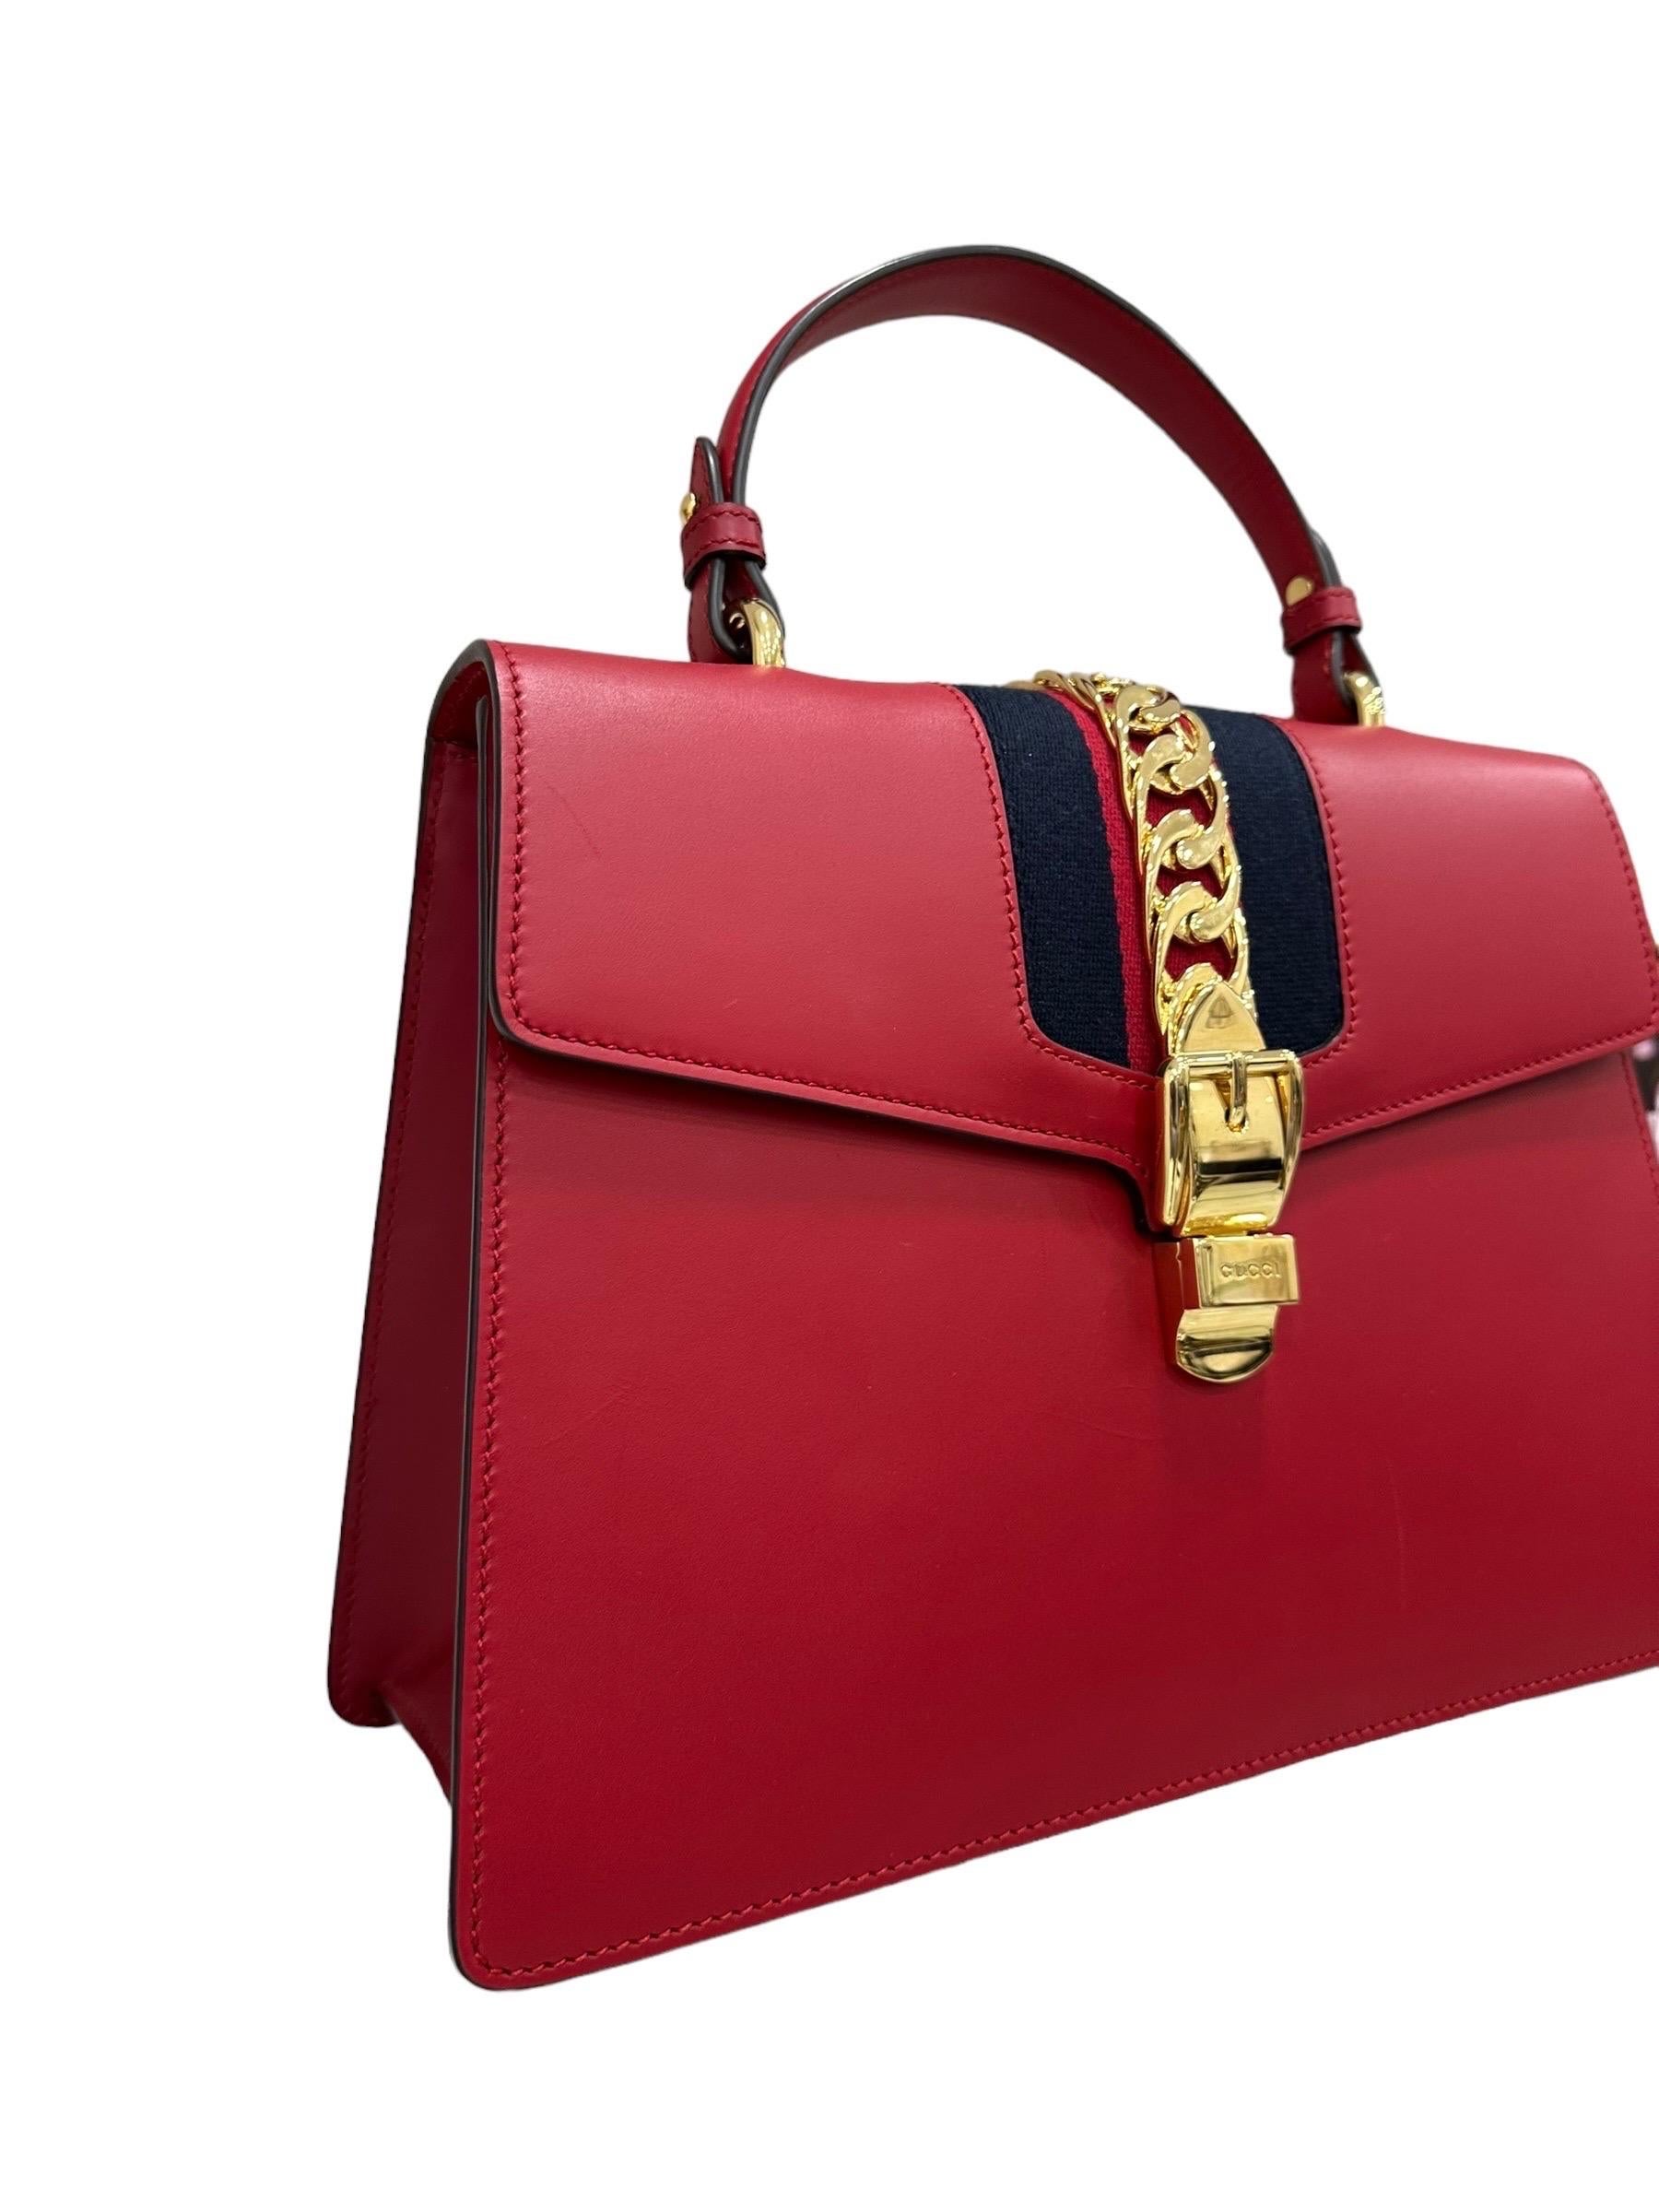 Gucci Sylvie Media Borsa a Tracolla pelle Rossa  In Excellent Condition For Sale In Torre Del Greco, IT